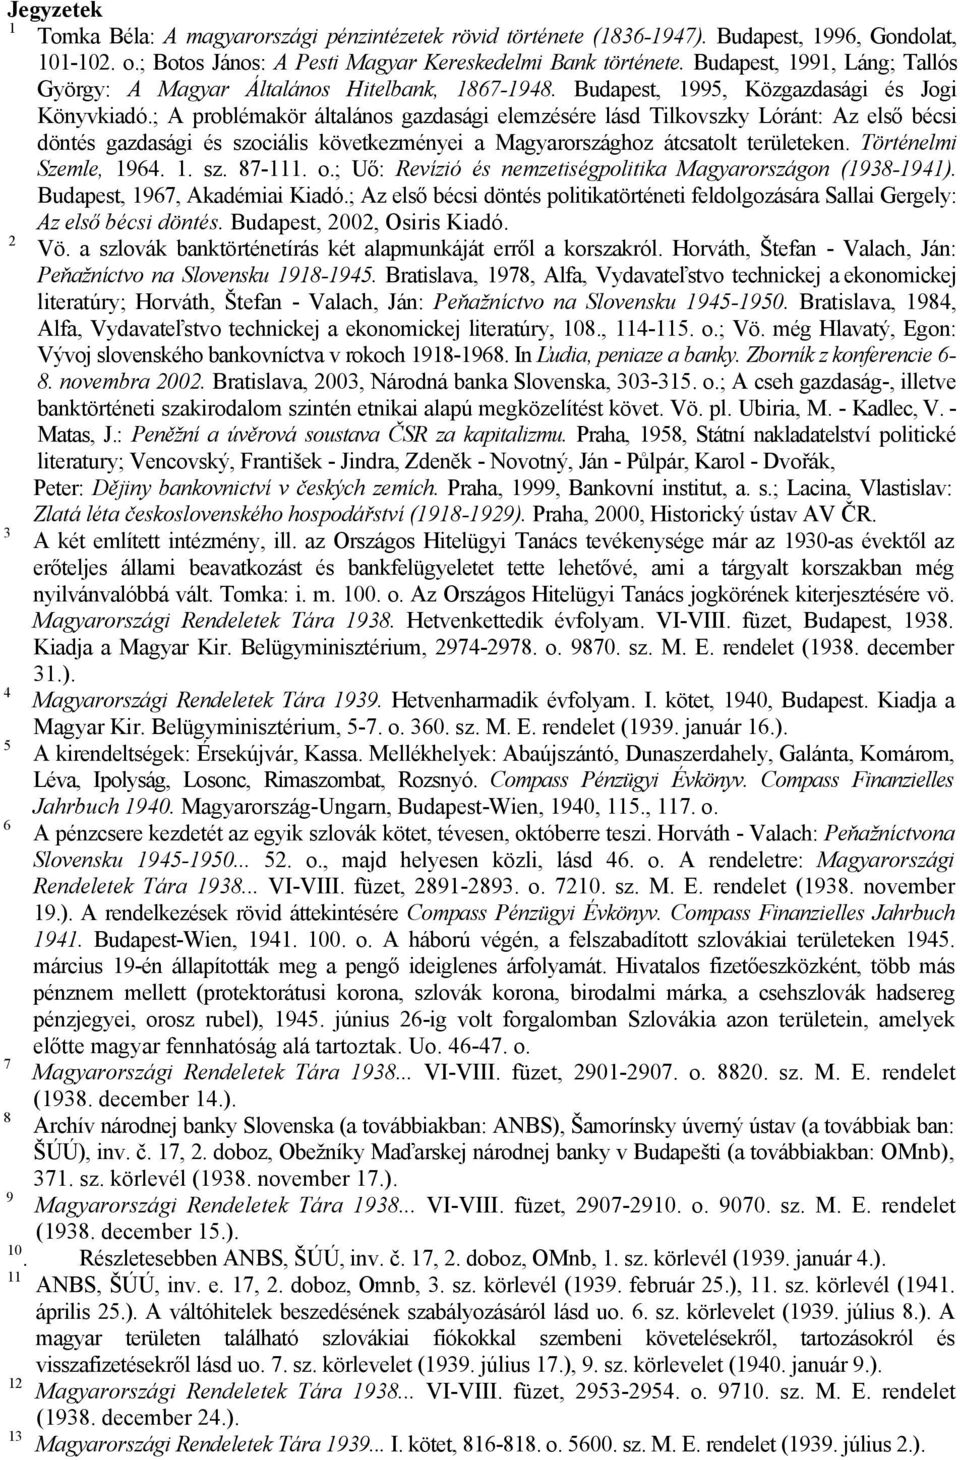 ; A problémakör általános gazdasági elemzésére lásd Tilkovszky Lóránt: Az első bécsi döntés gazdasági és szociális következményei a Magyarországhoz átcsatolt területeken. Történelmi Szemle, 1964. 1. sz. 87-111.